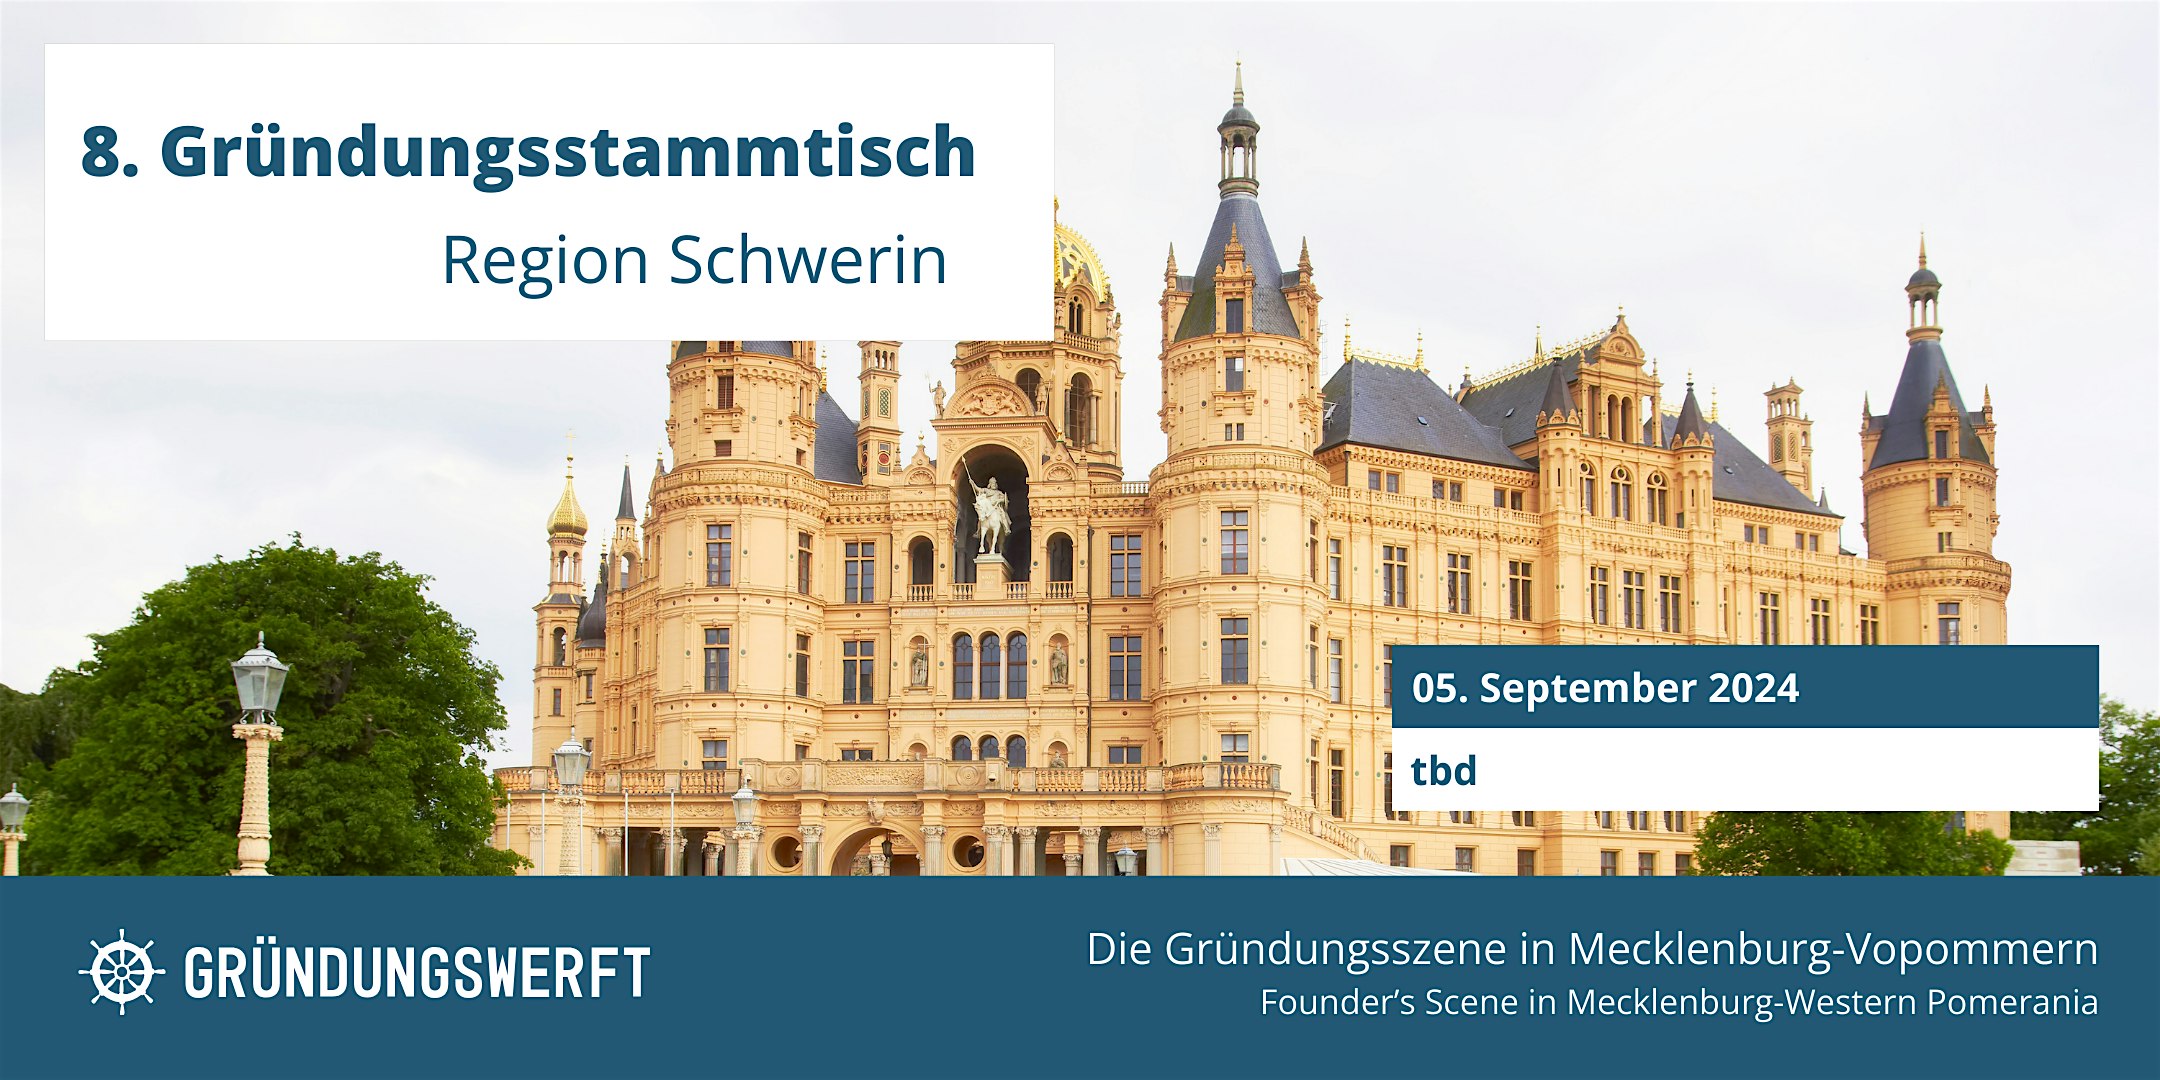 Veranstaltungsbild für die Veranstaltung 8. Gründungsstammtisch Region Schwerin